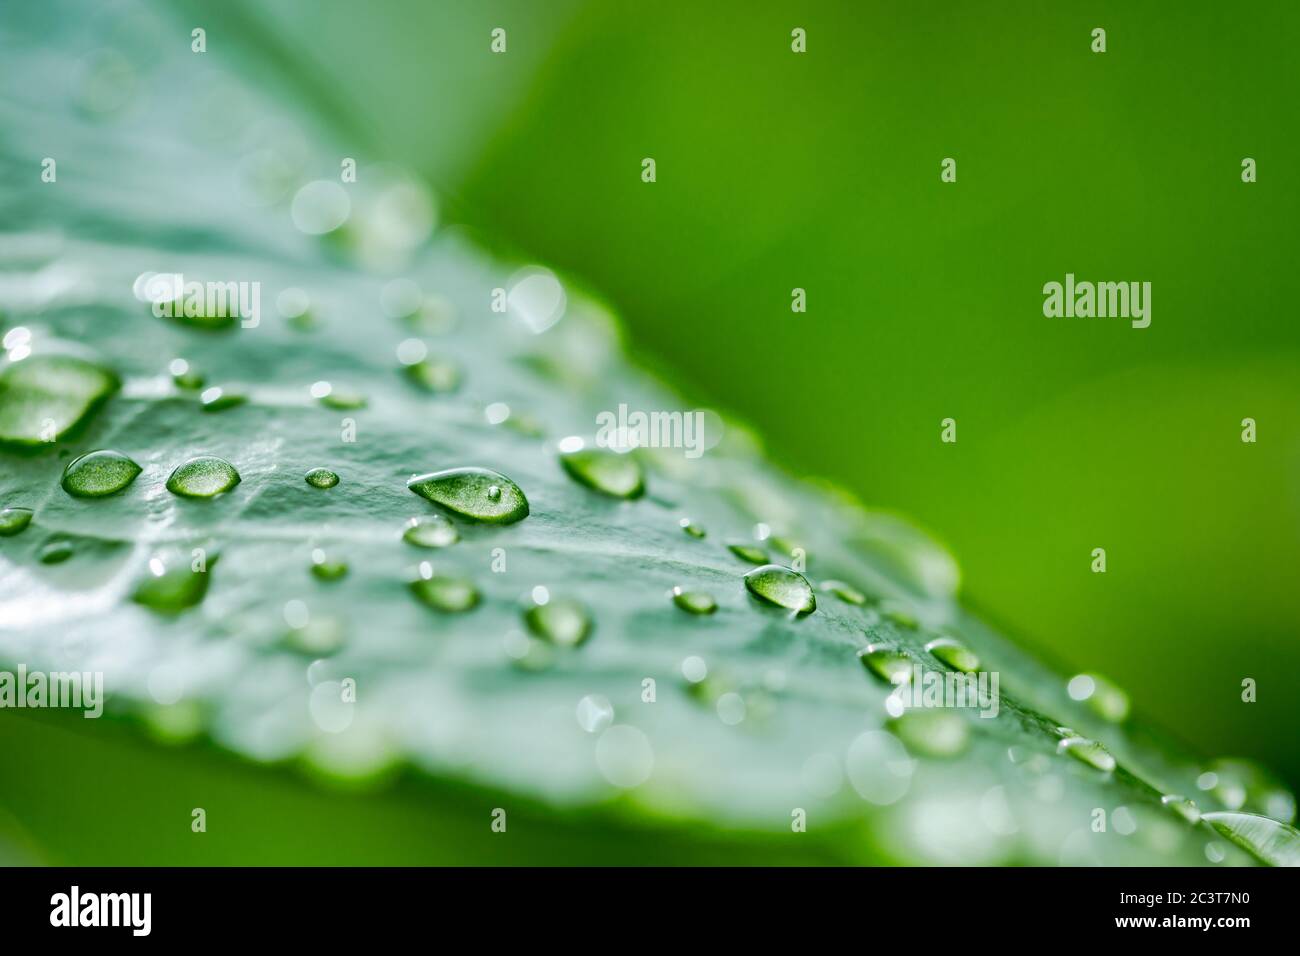 Schönes grünes Blatt mit Wassertropfen. Perfekte Natur Makro, sauberes Wasser Tröpfchen, Regen oder Morgentau Nahaufnahme. Grün frische Natur Stockfoto